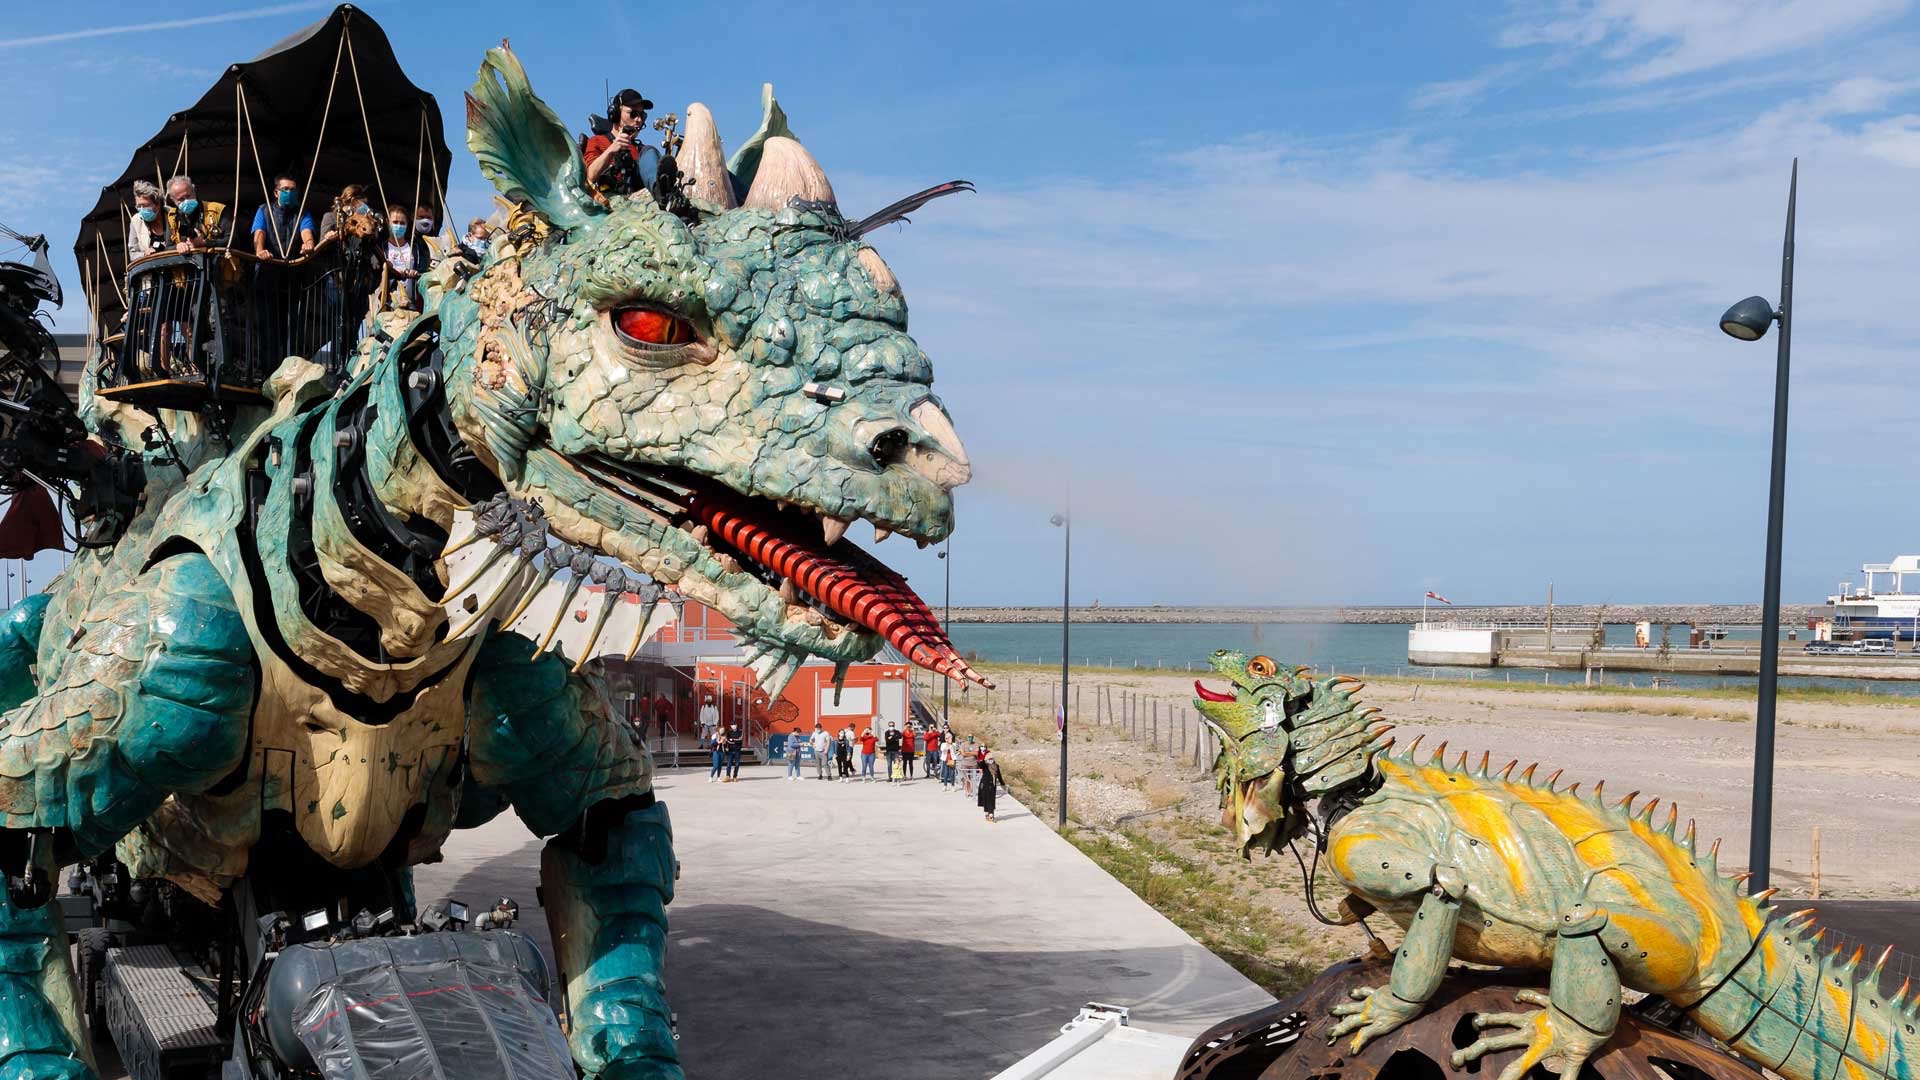 Rencontre théâtrale entre le Dragon de Calais et l'Iguane Sentinelle sur le parvis de la Cité du Dragon à Calais